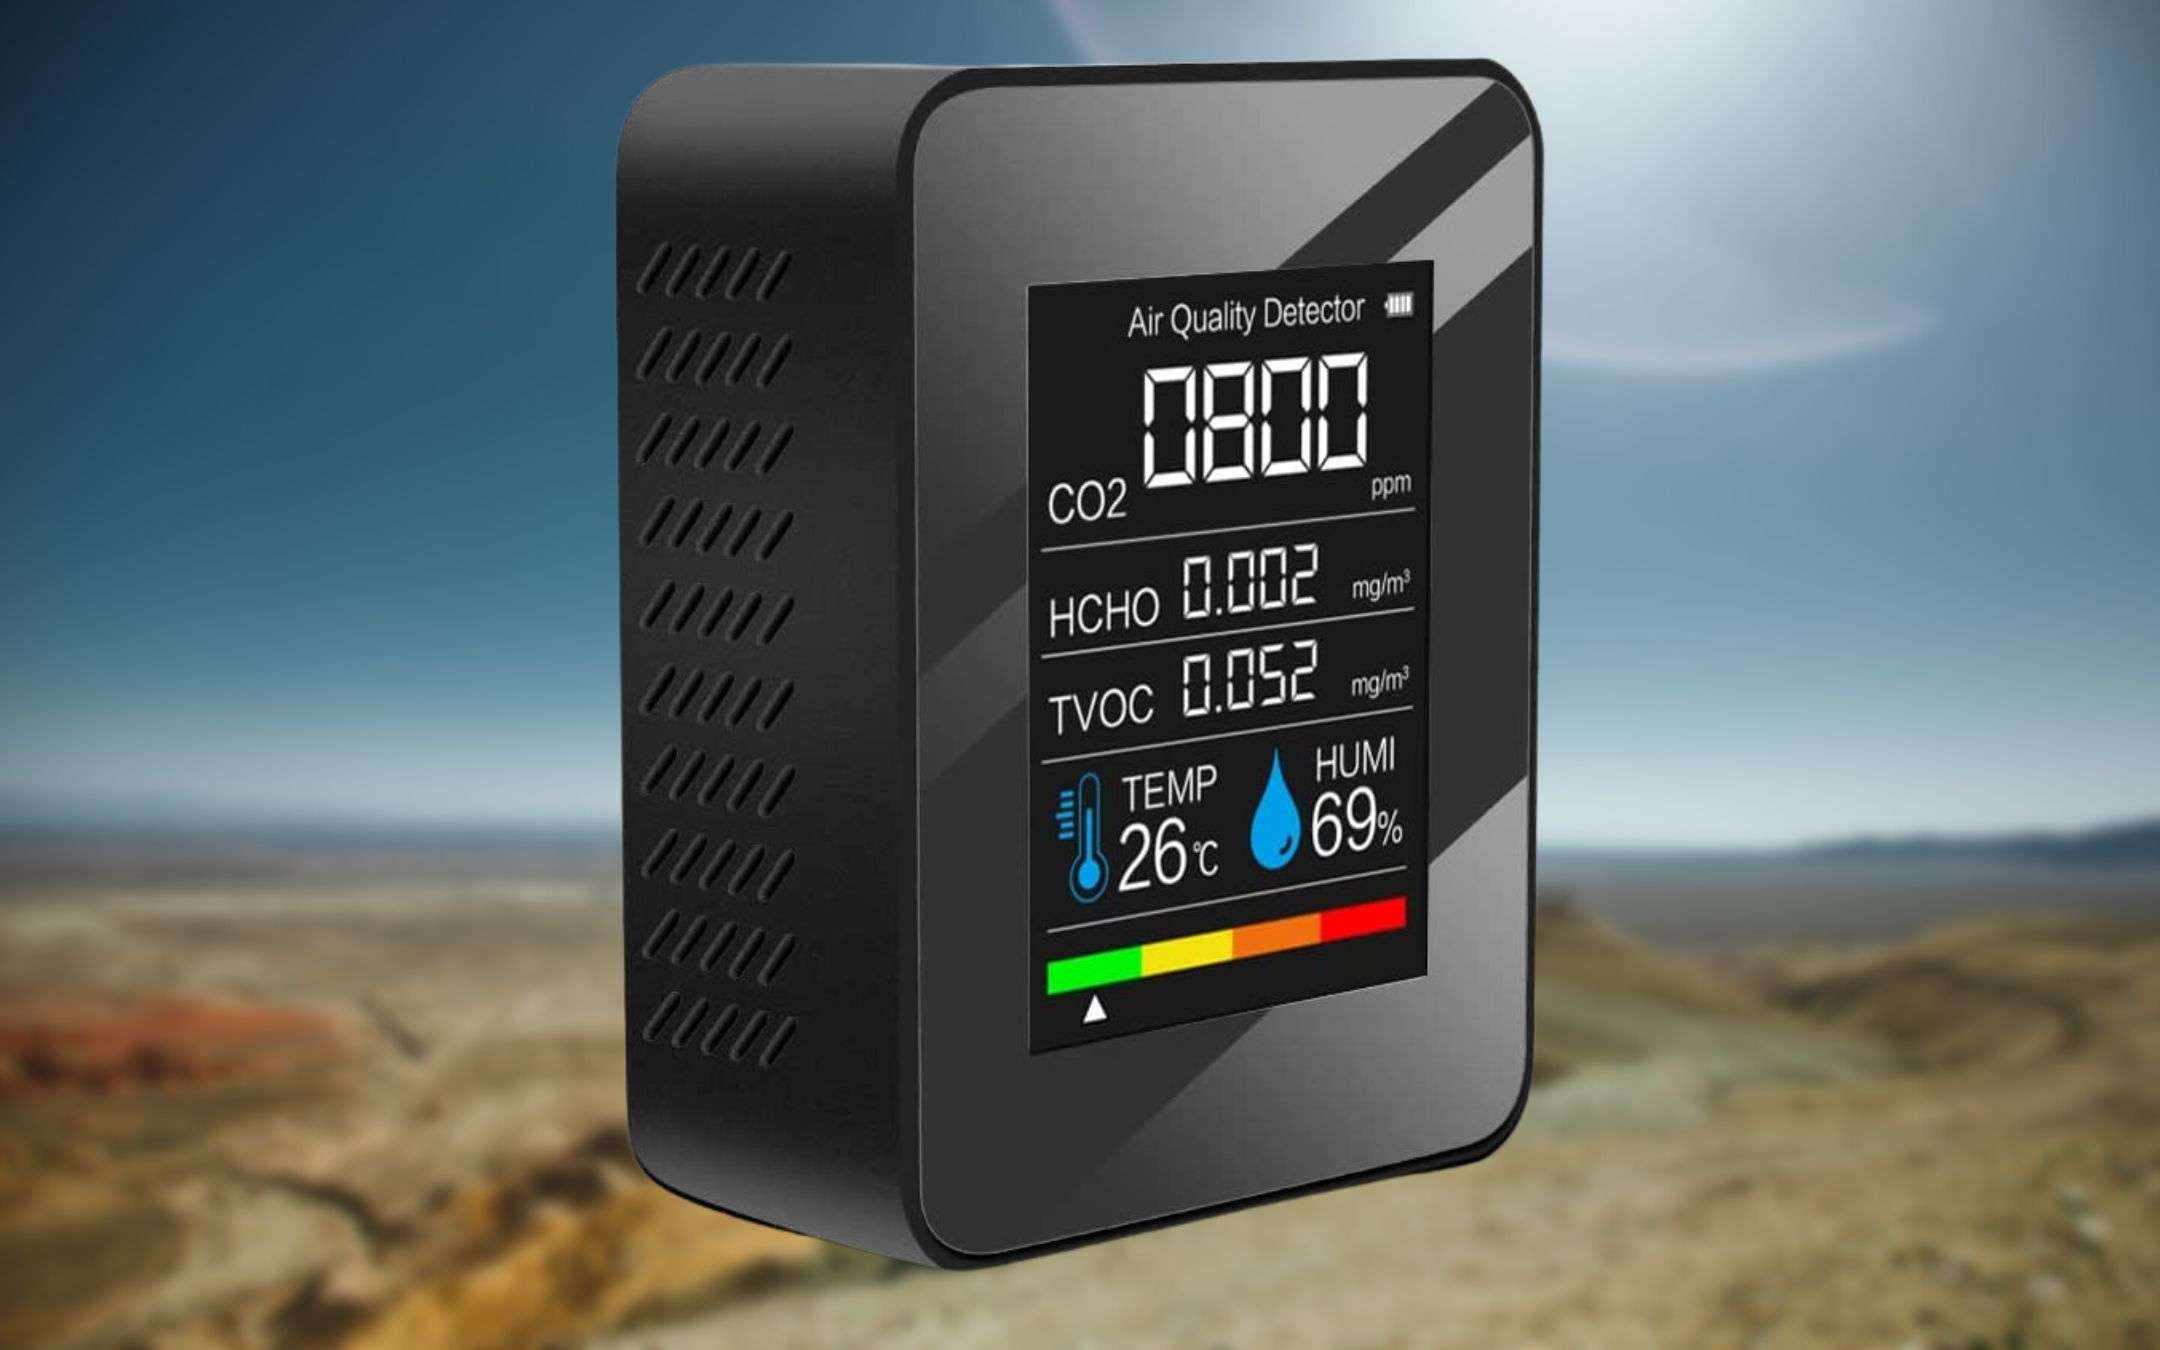 Monitor qualità dell'aria 5 in 1 a 14€ su Amazon: BOMBETTA top